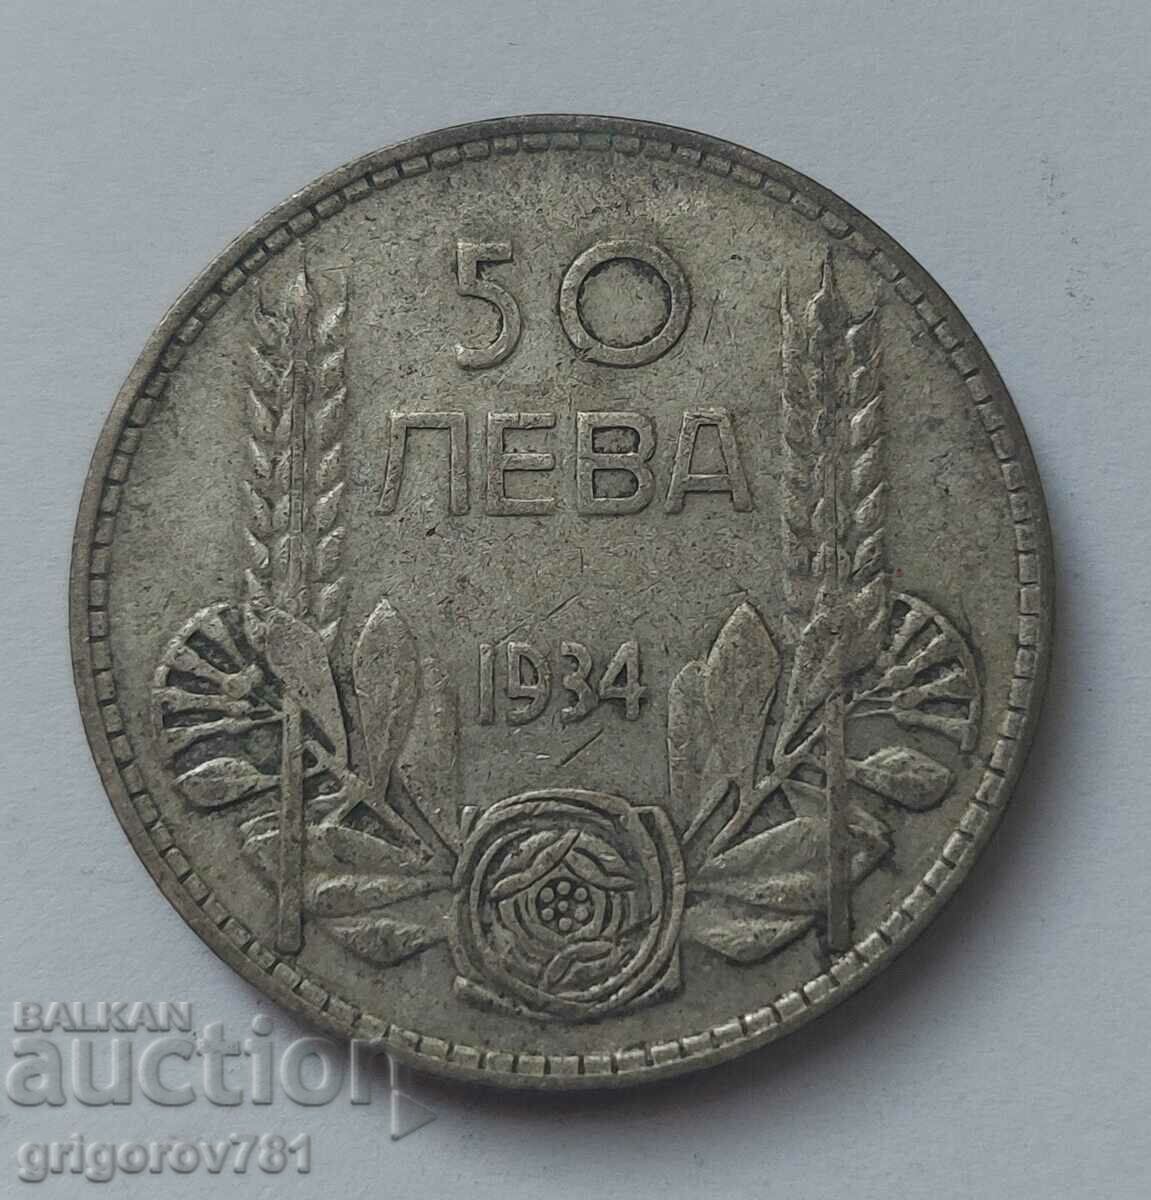 Ασήμι 50 λέβα Βουλγαρία 1934 - ασημένιο νόμισμα #23